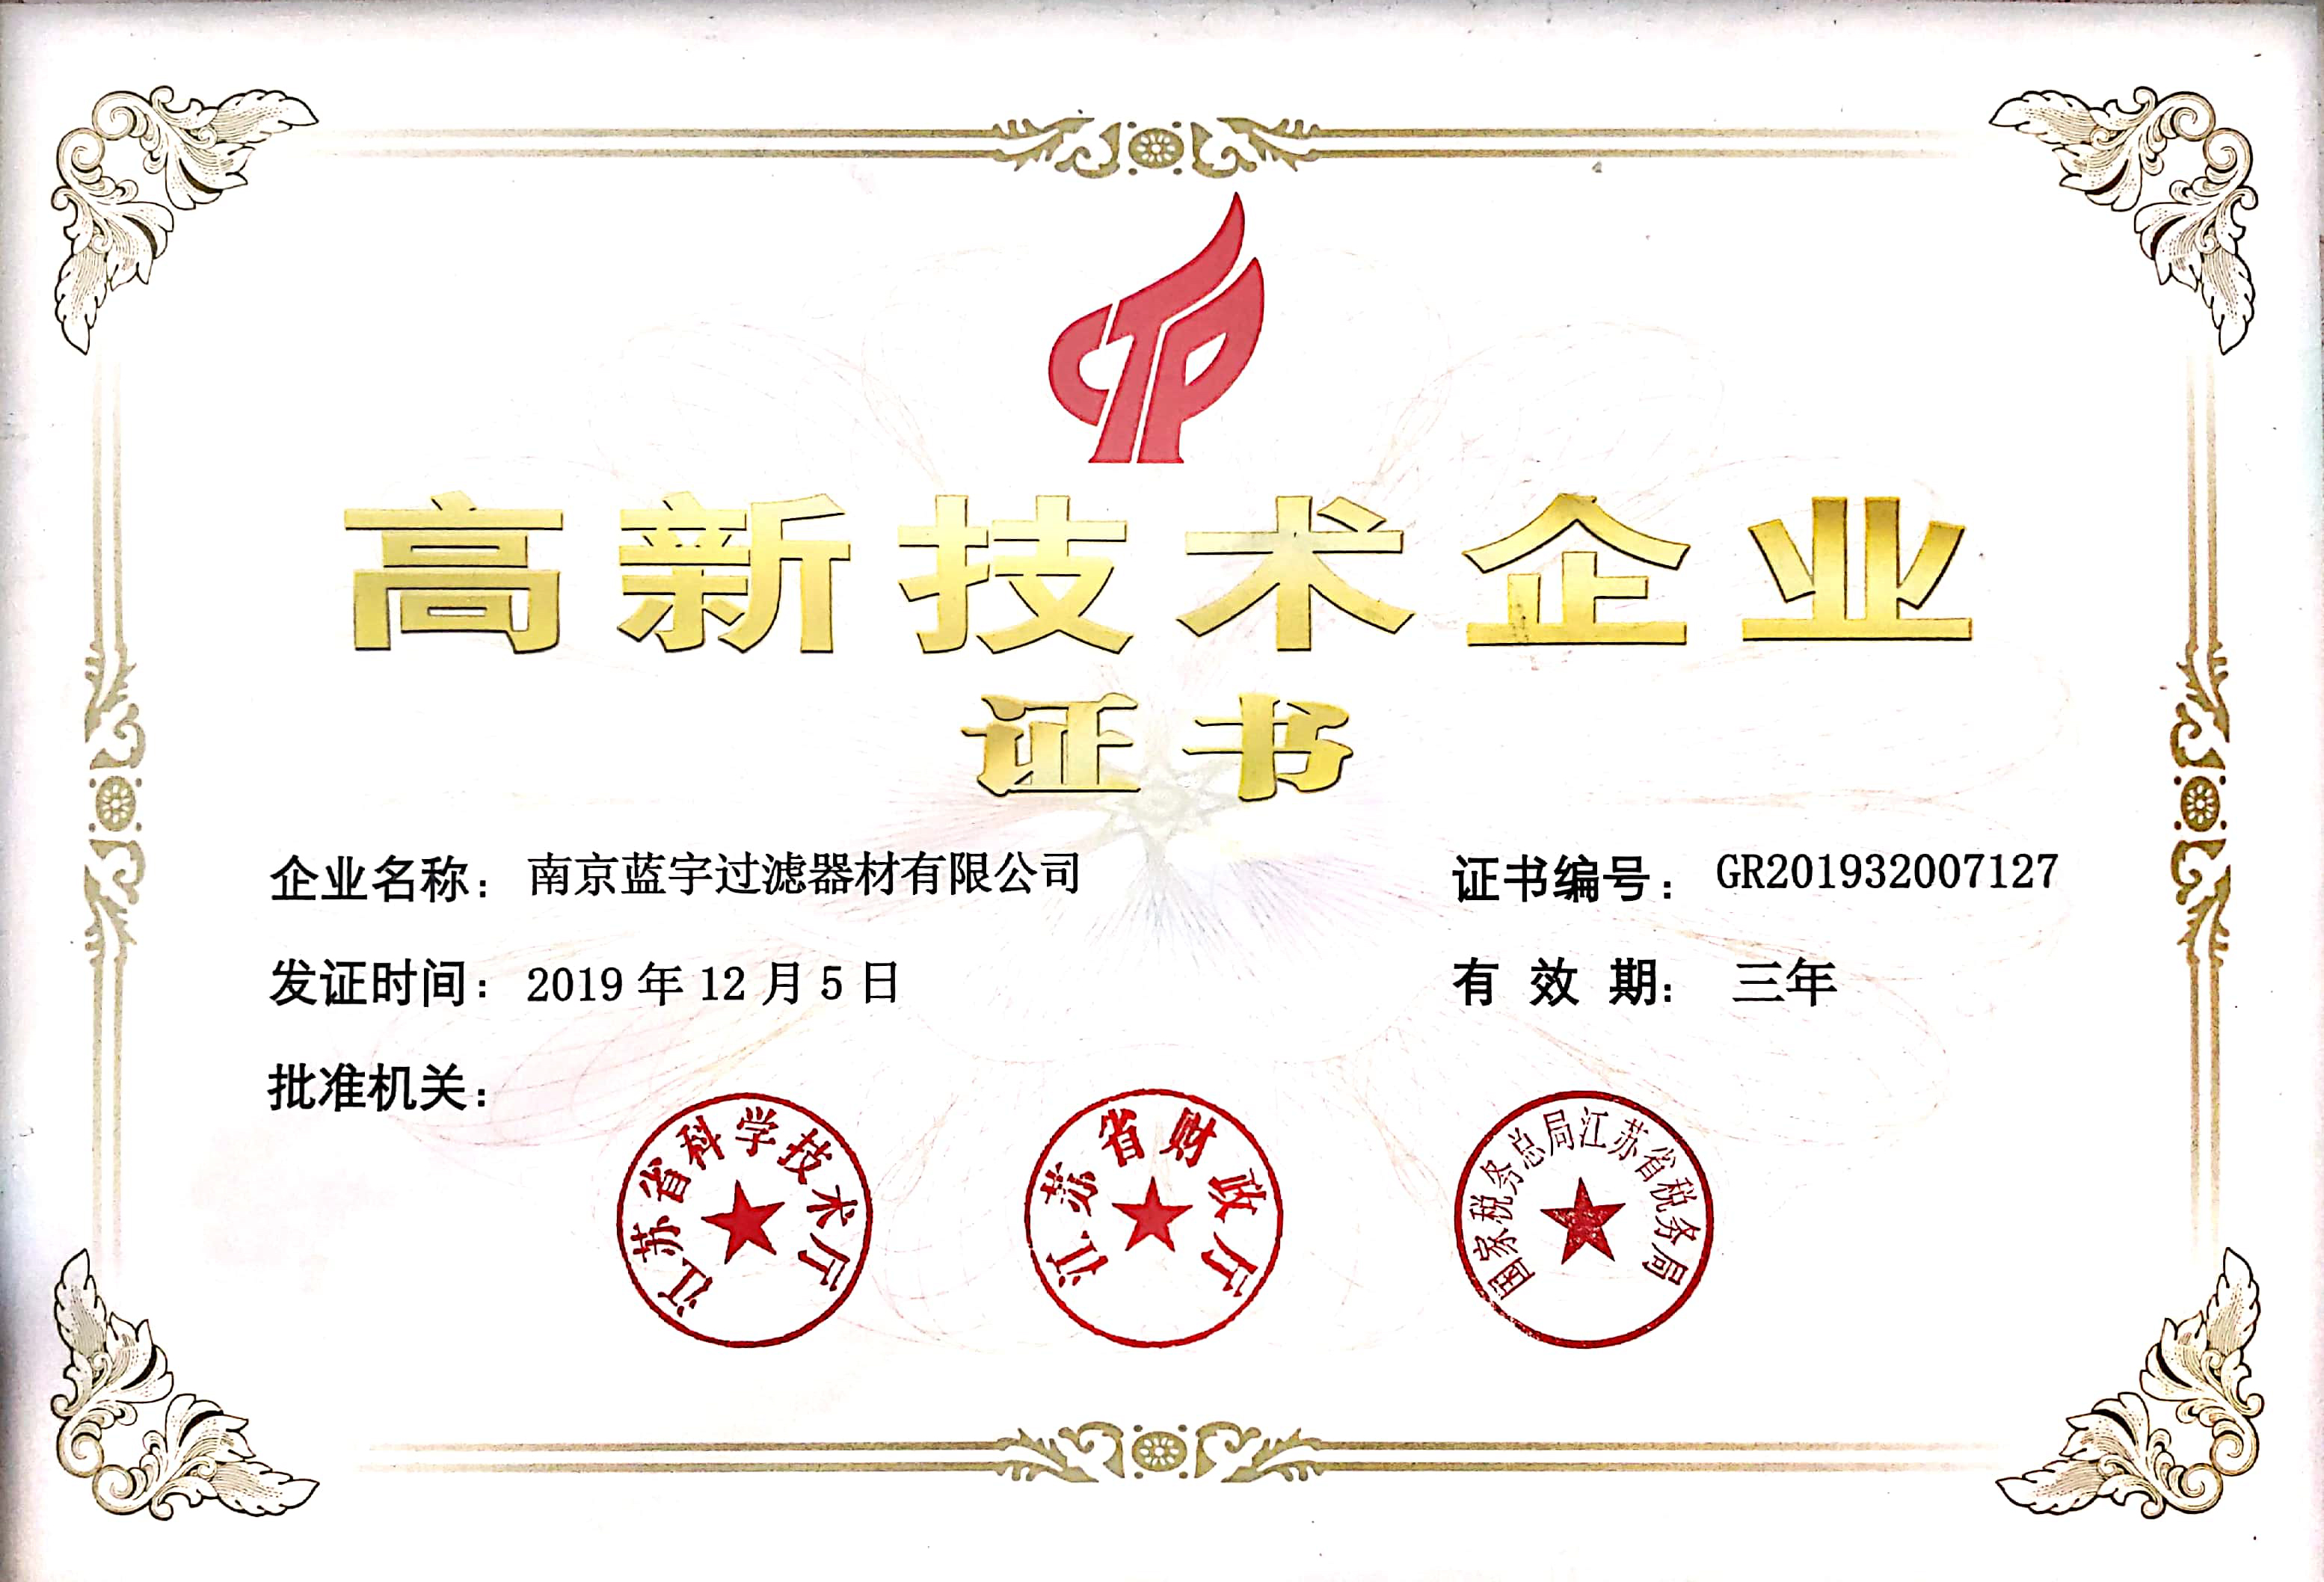 Felicitaciones a Nanjing Blue Sky Filter Co.,Ltd.por Ganar la Certificación Nacional de Empresa de Alta Tecnología